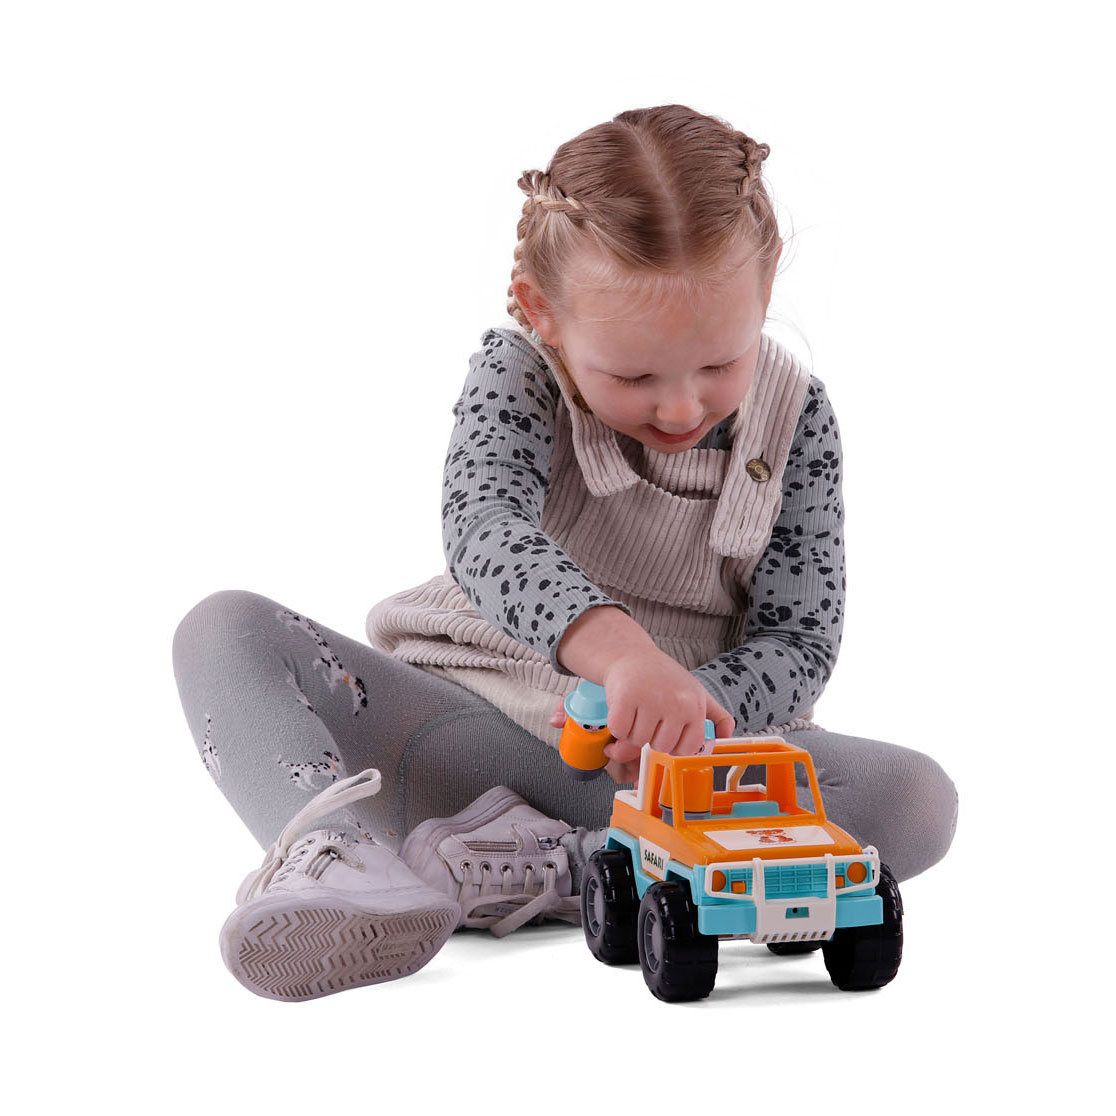 Cavallino Jeep Oranje met 2 Speelfiguren